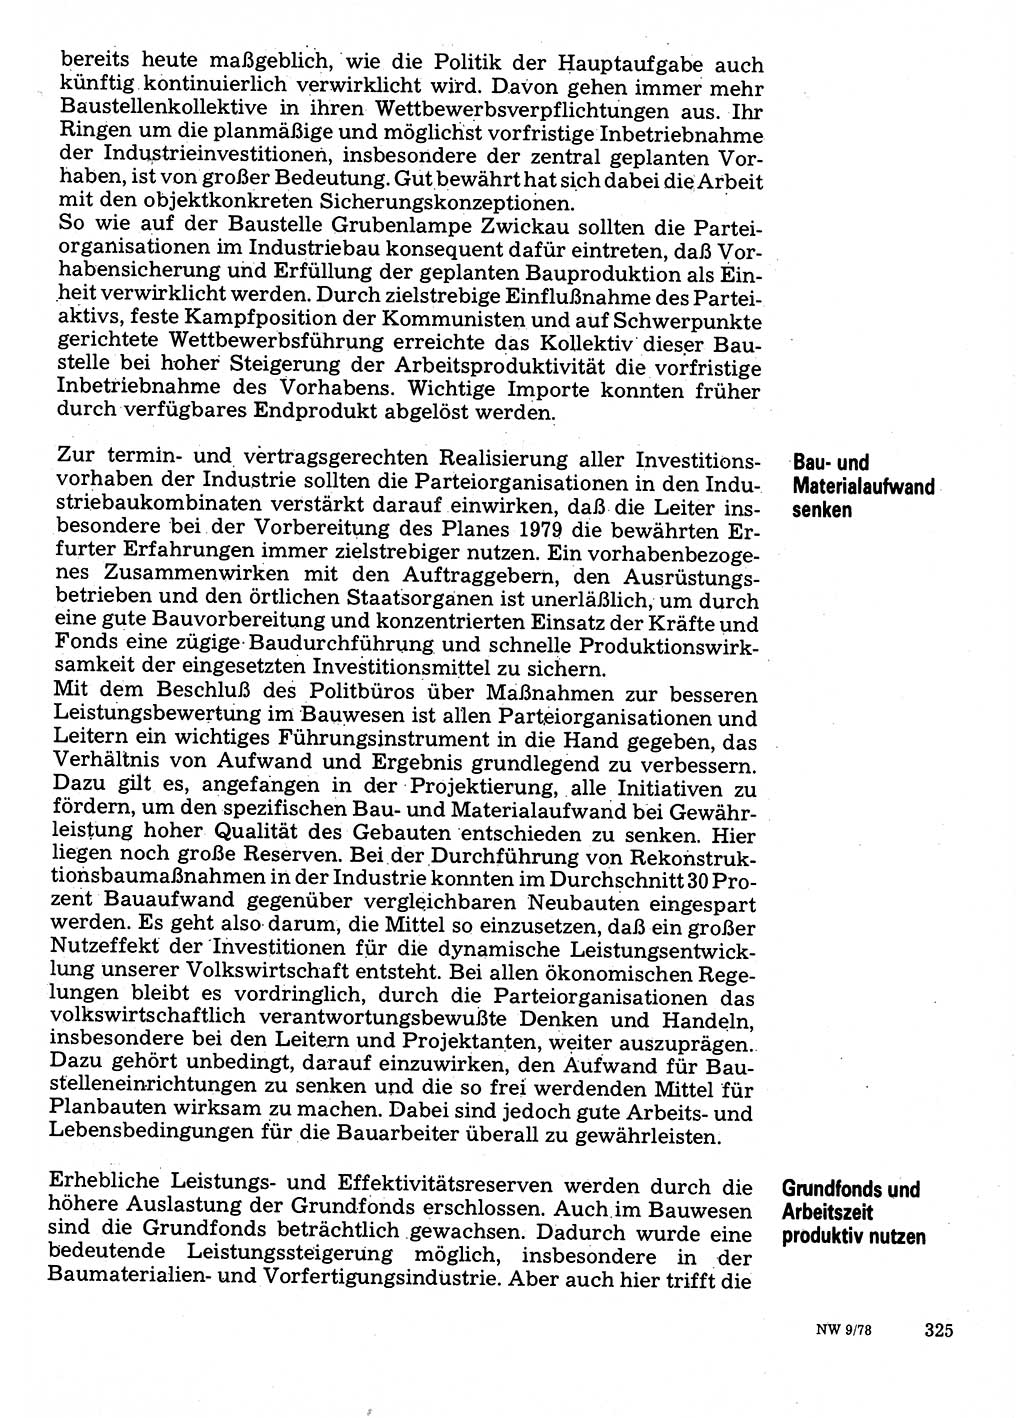 Neuer Weg (NW), Organ des Zentralkomitees (ZK) der SED (Sozialistische Einheitspartei Deutschlands) für Fragen des Parteilebens, 33. Jahrgang [Deutsche Demokratische Republik (DDR)] 1978, Seite 325 (NW ZK SED DDR 1978, S. 325)